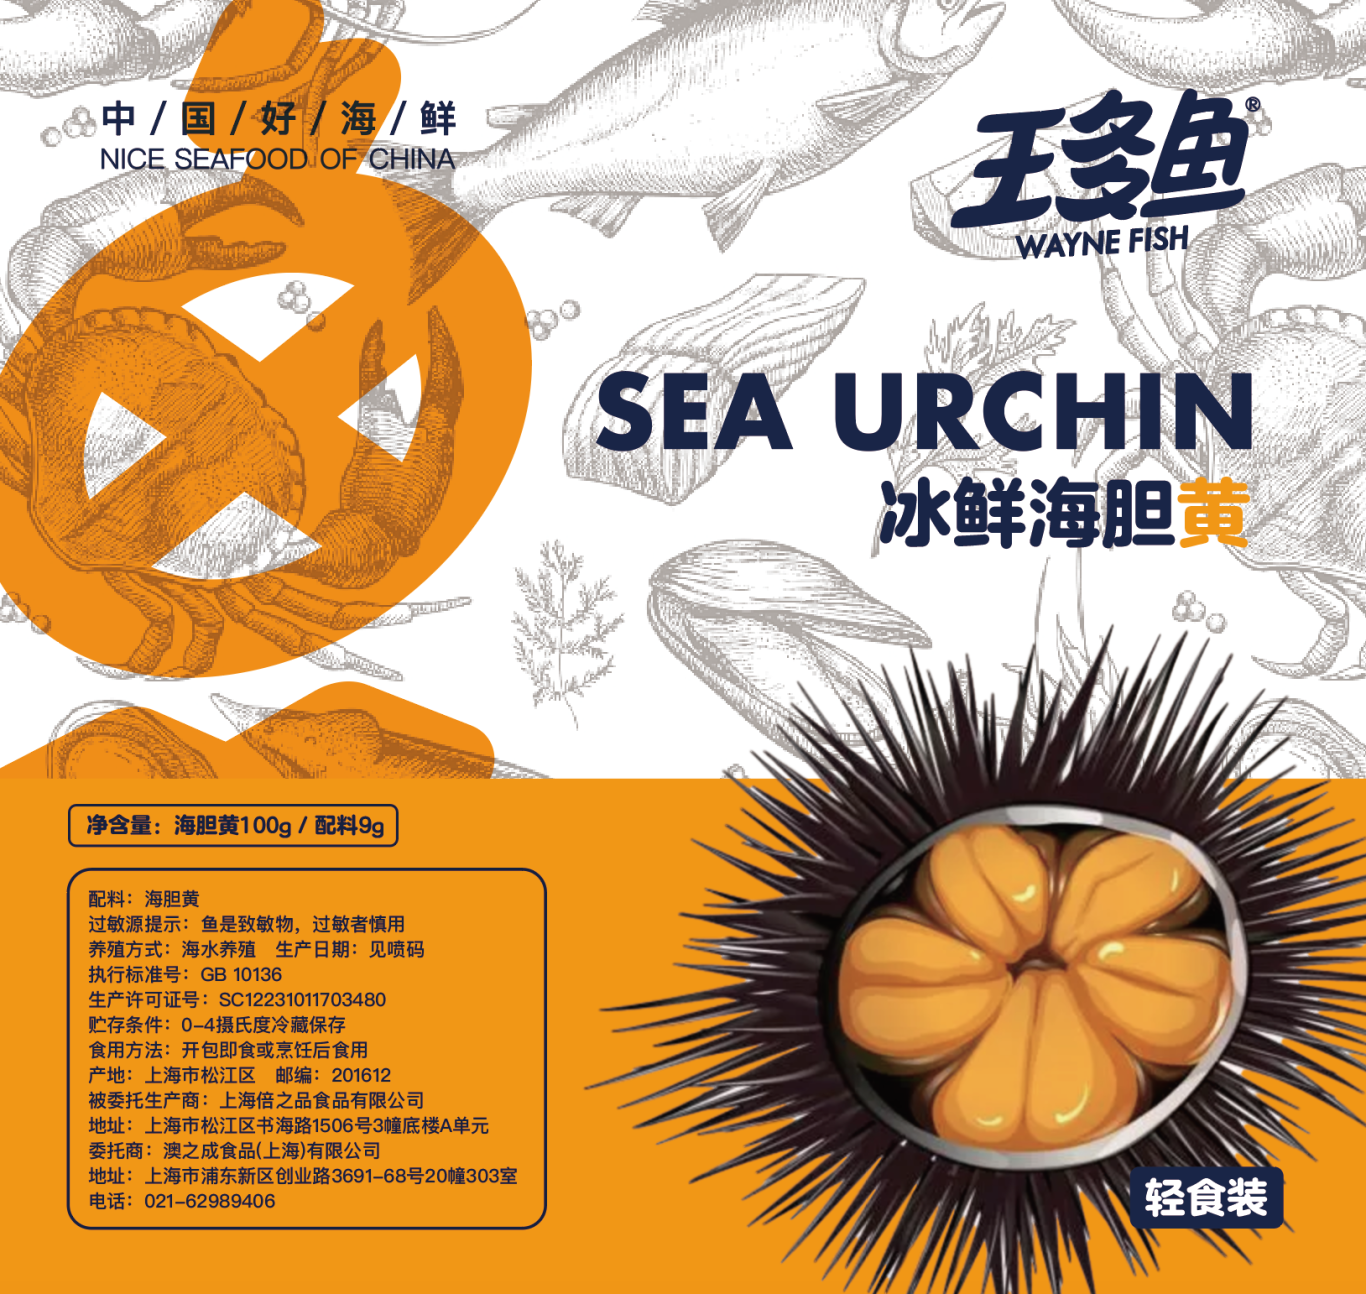 王多鱼生鲜海胆产品真空包装设计图2